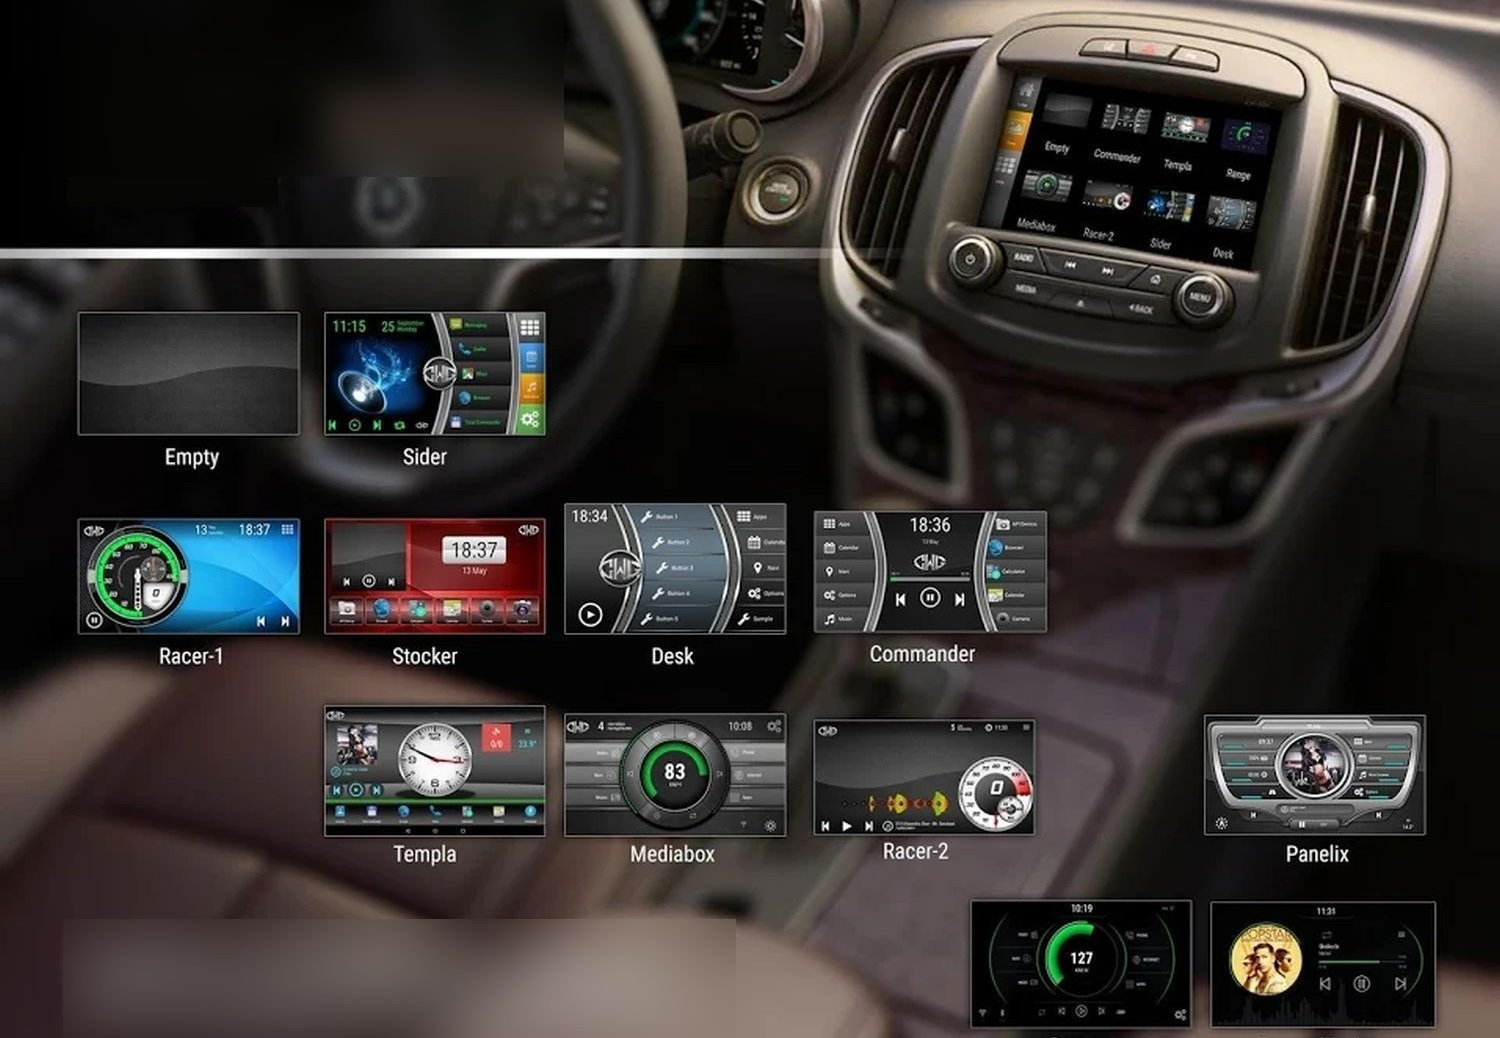 Android Auto: Display aufrüsten - Alternativer Launcher bringt